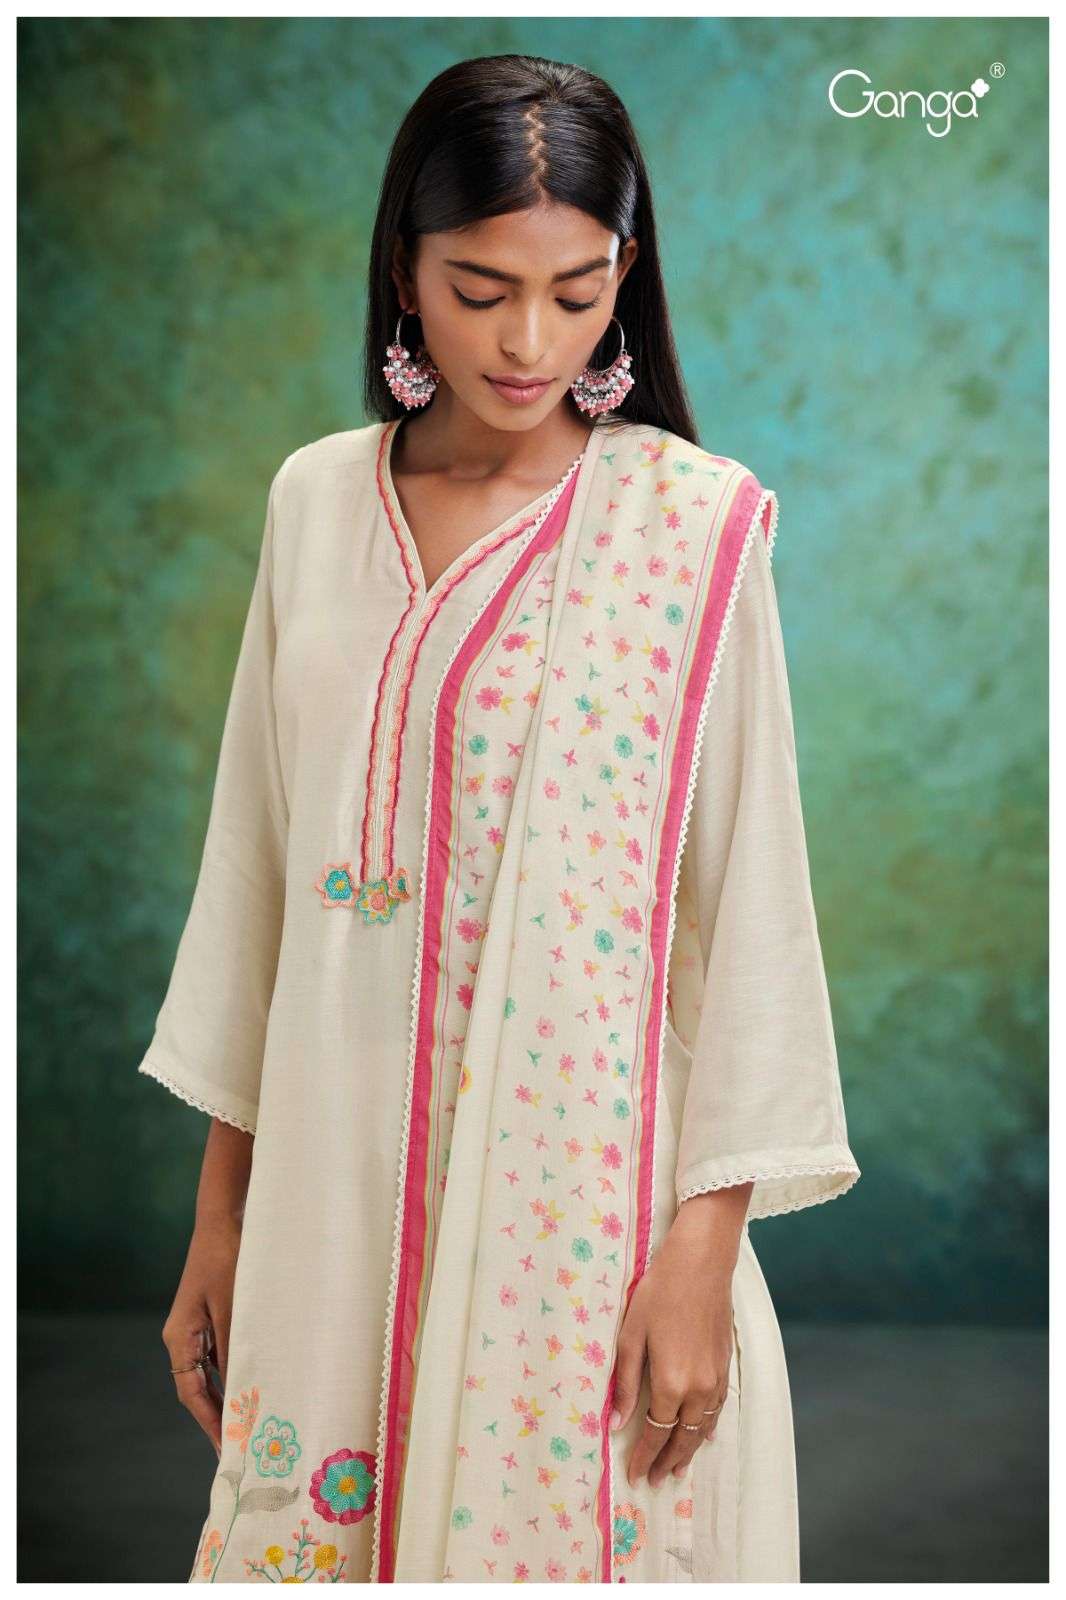 ganga zelie 1743 series exclusive designer salwar kameez catalogue wholesale price surat 